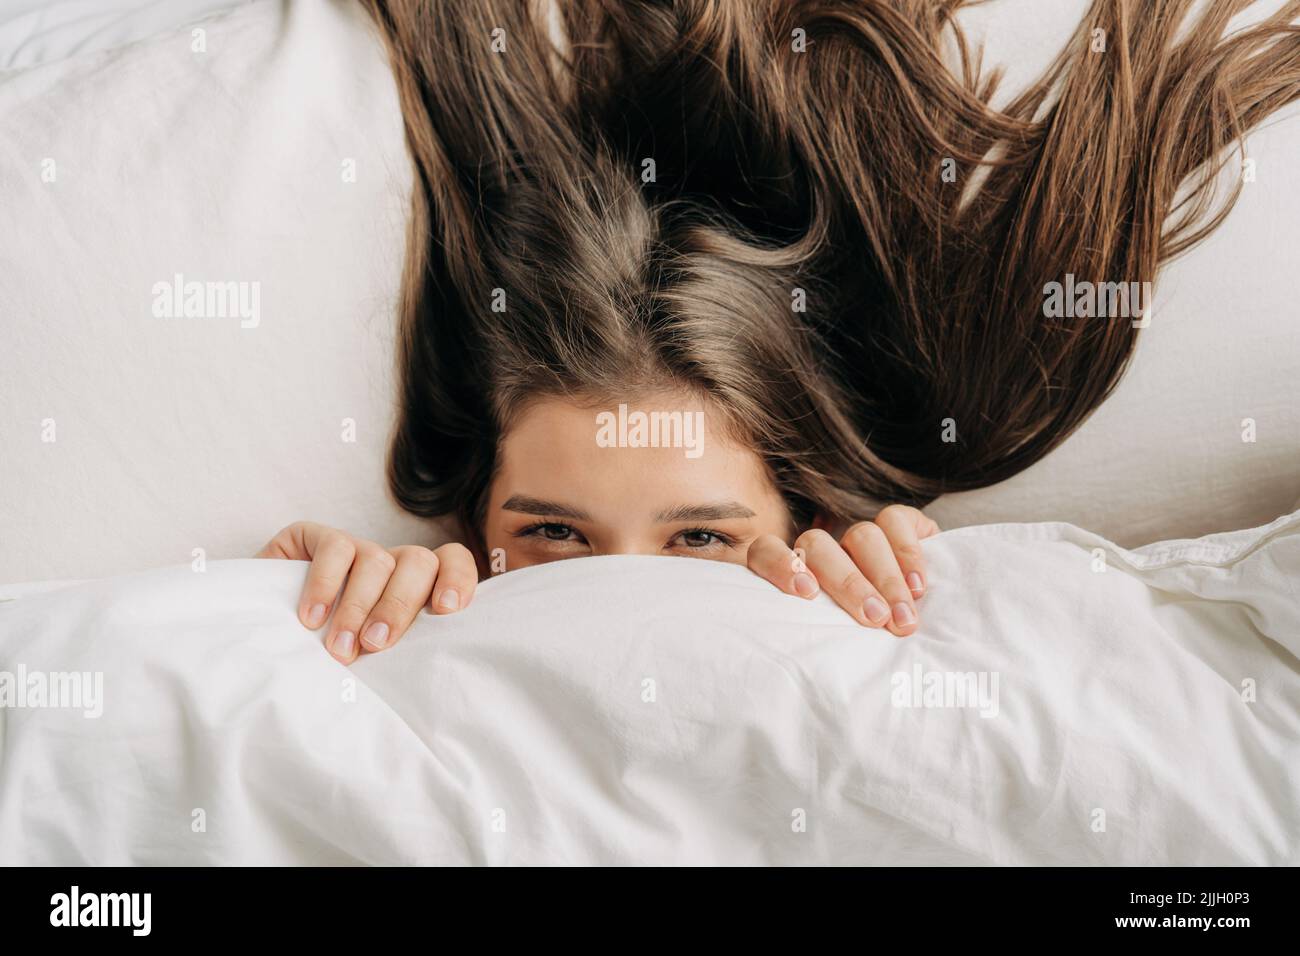 Am Morgen guckt eine junge Frau unter der Decke, die auf dem Bett liegt, heraus. Stockfoto